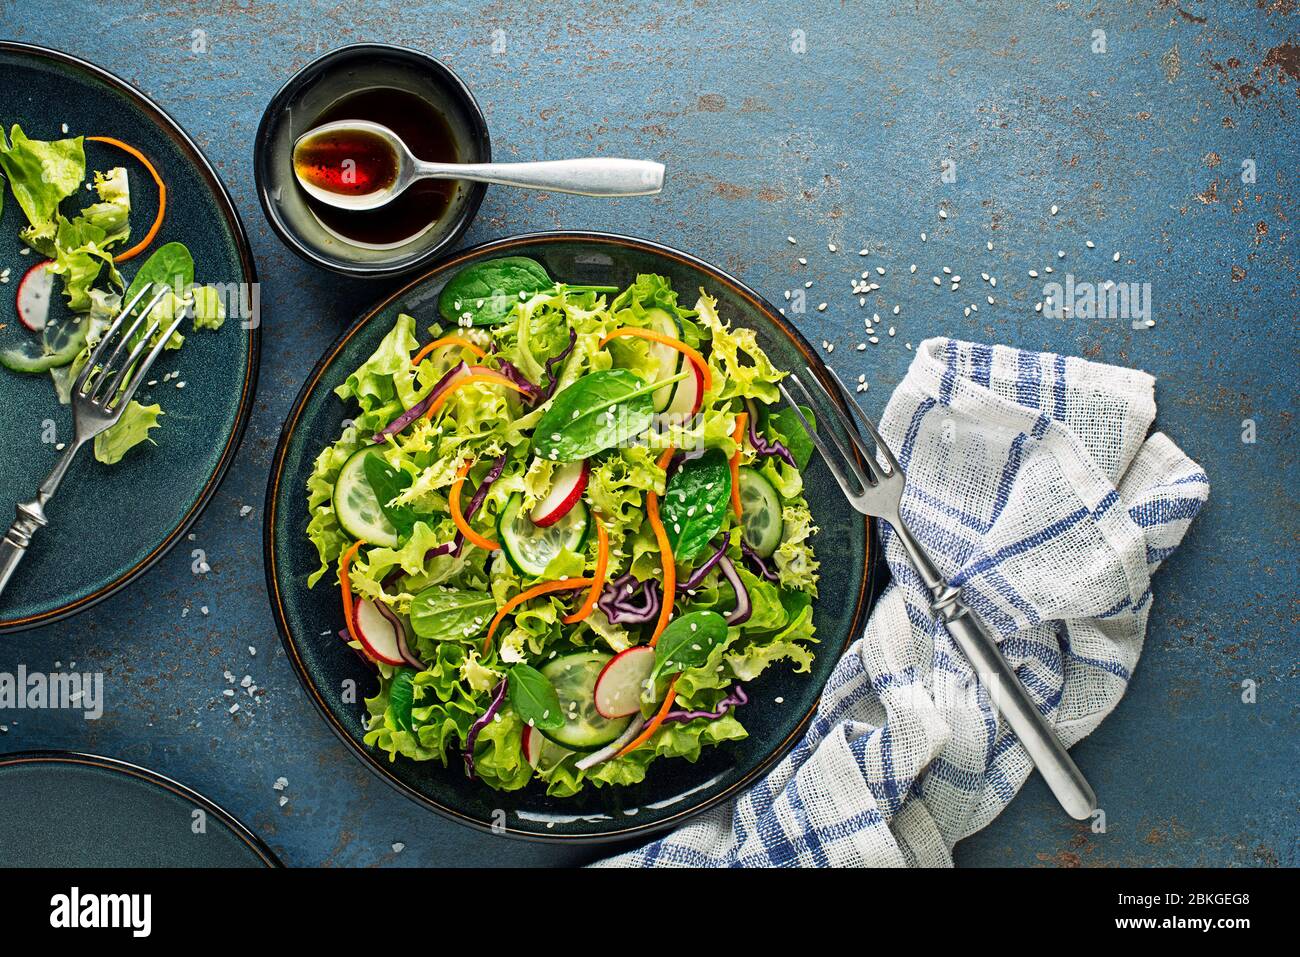 Repas de salade de laitue verte avec légumes frais mélangés sur fond bleu de table Banque D'Images